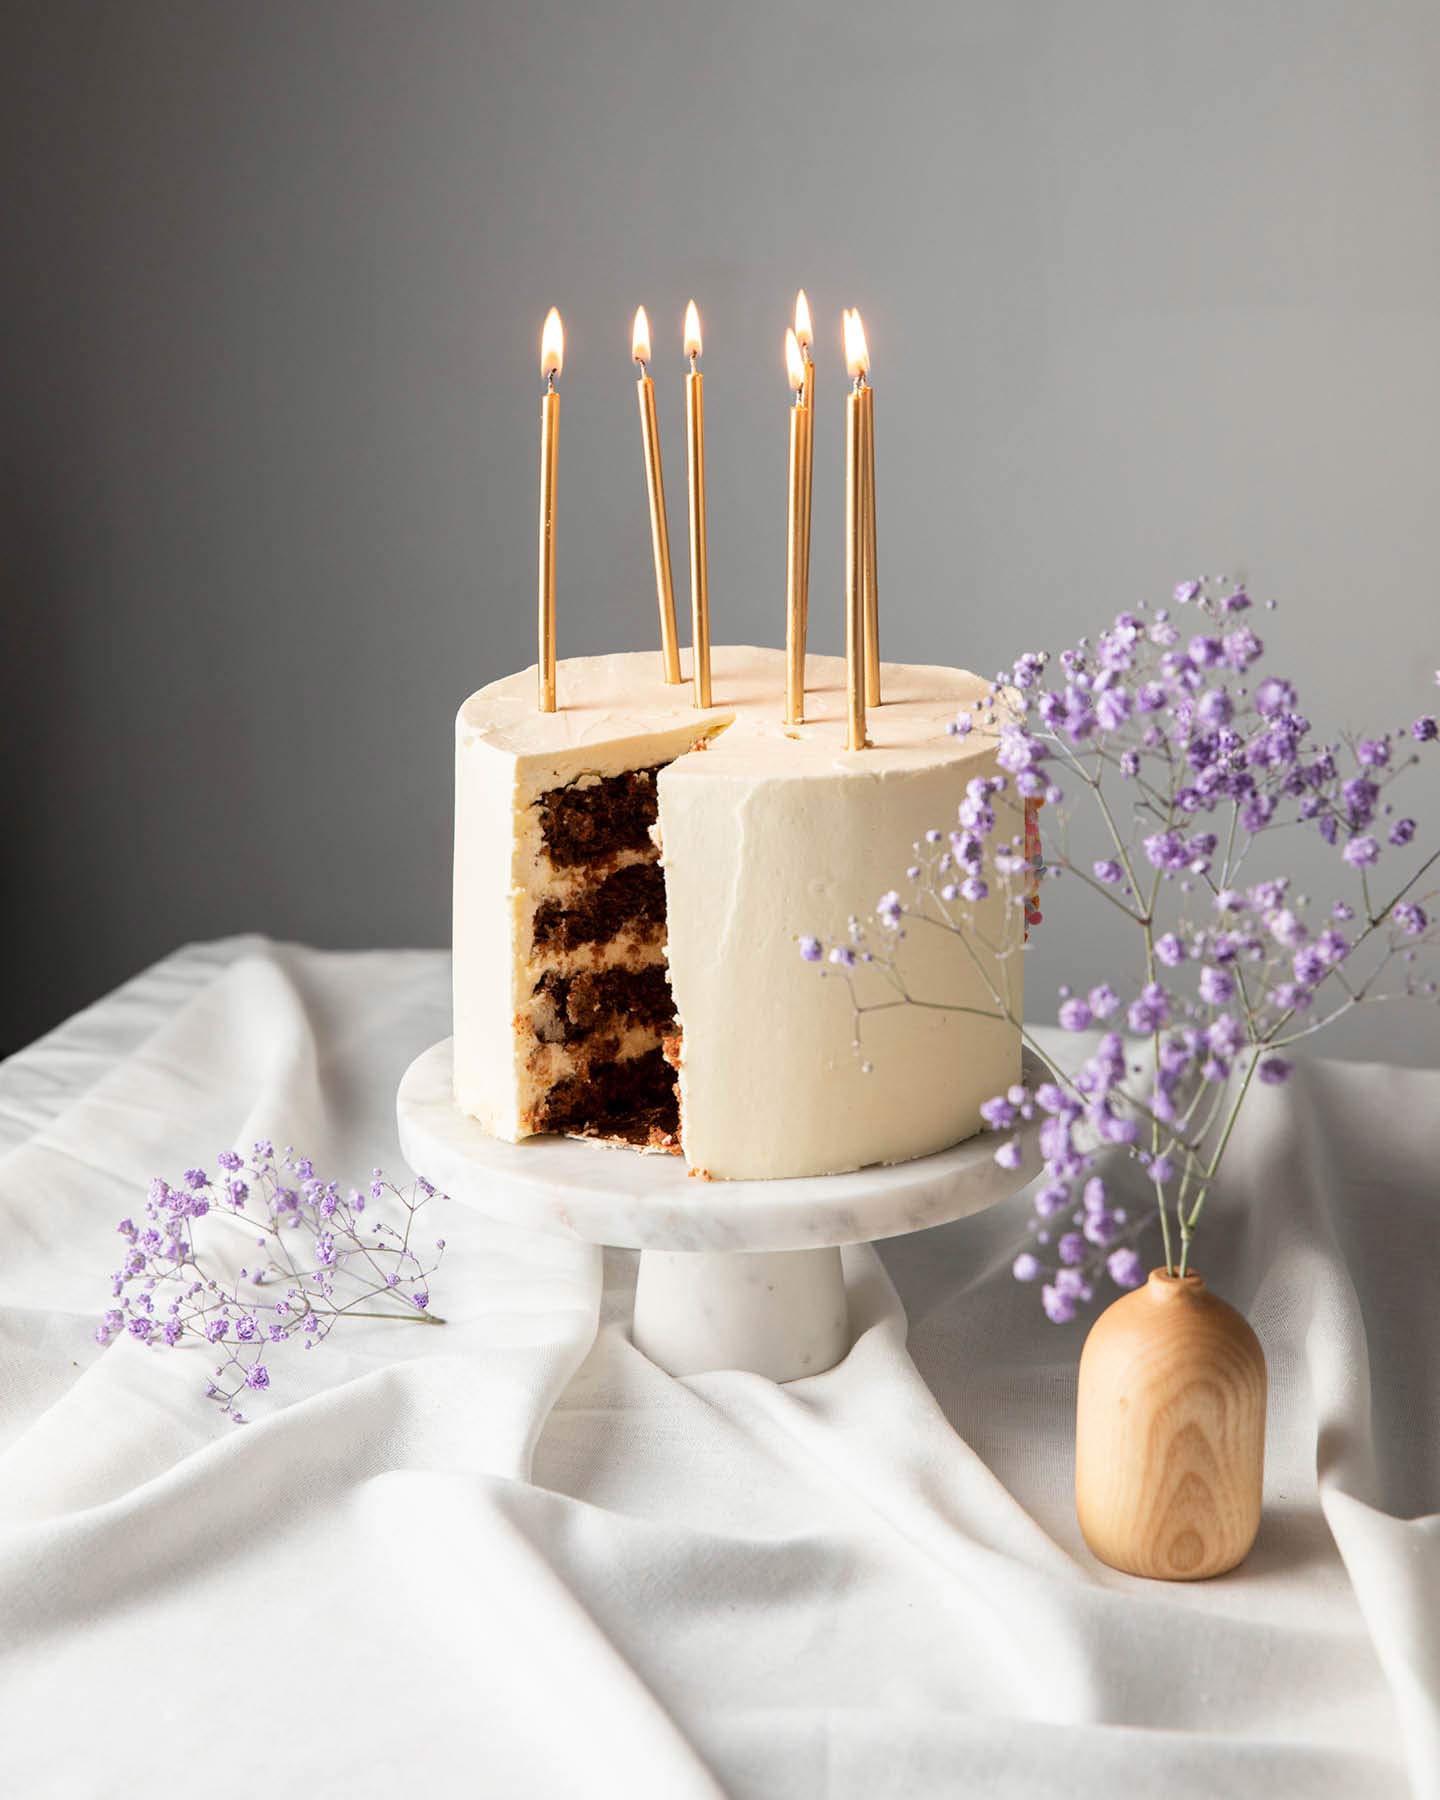 Weiße Torte mit Schoko-Füllung steht auf einer Mamorplatte auf einem Tisch. Goldene Kerzen brennen und stecken in der Geburtstagstorte.